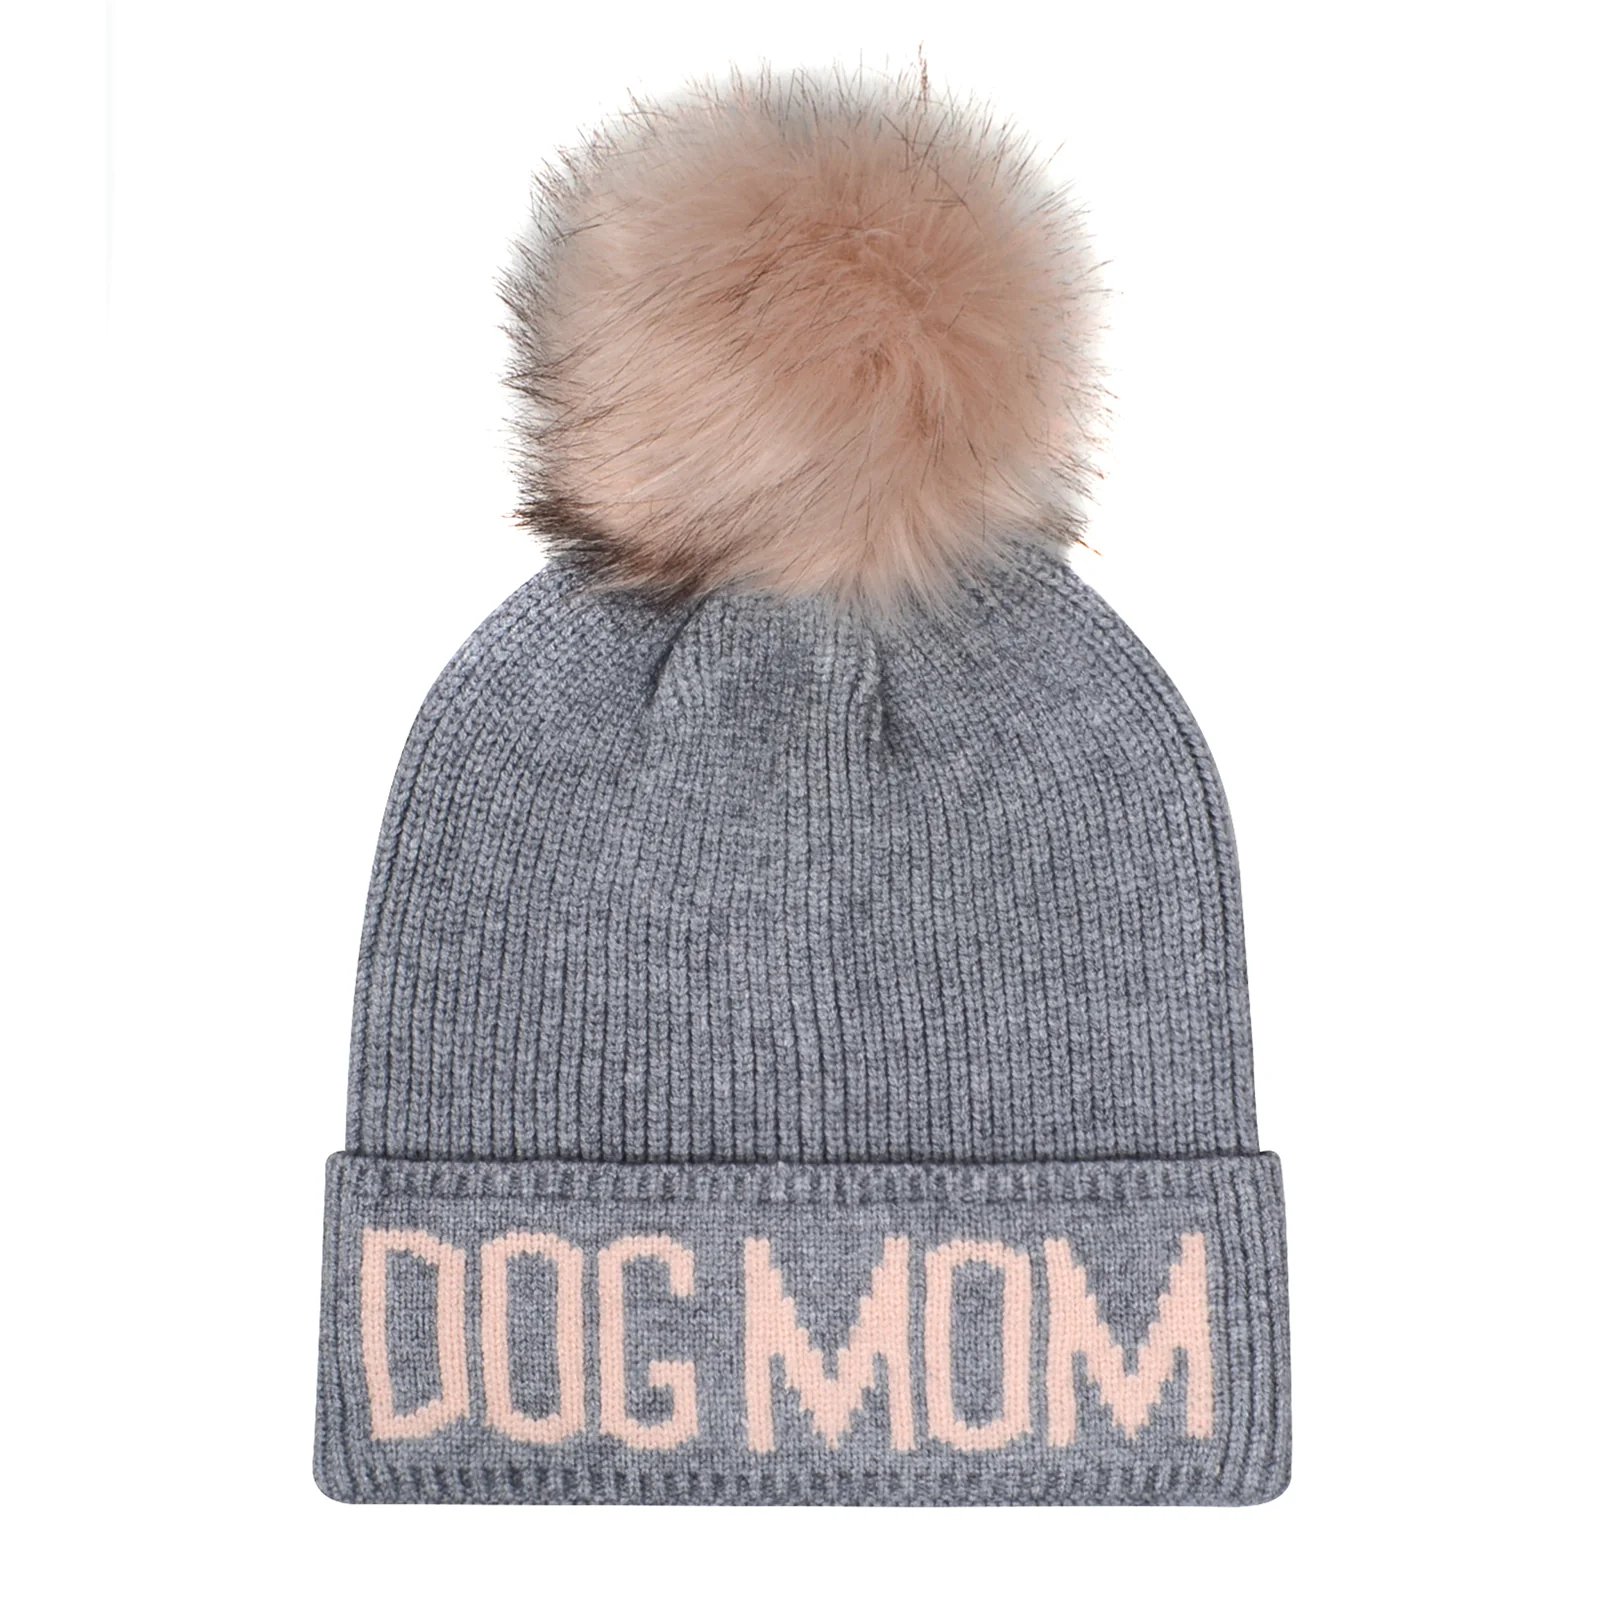 Dog Mom Pompom Knit Beanie Toque